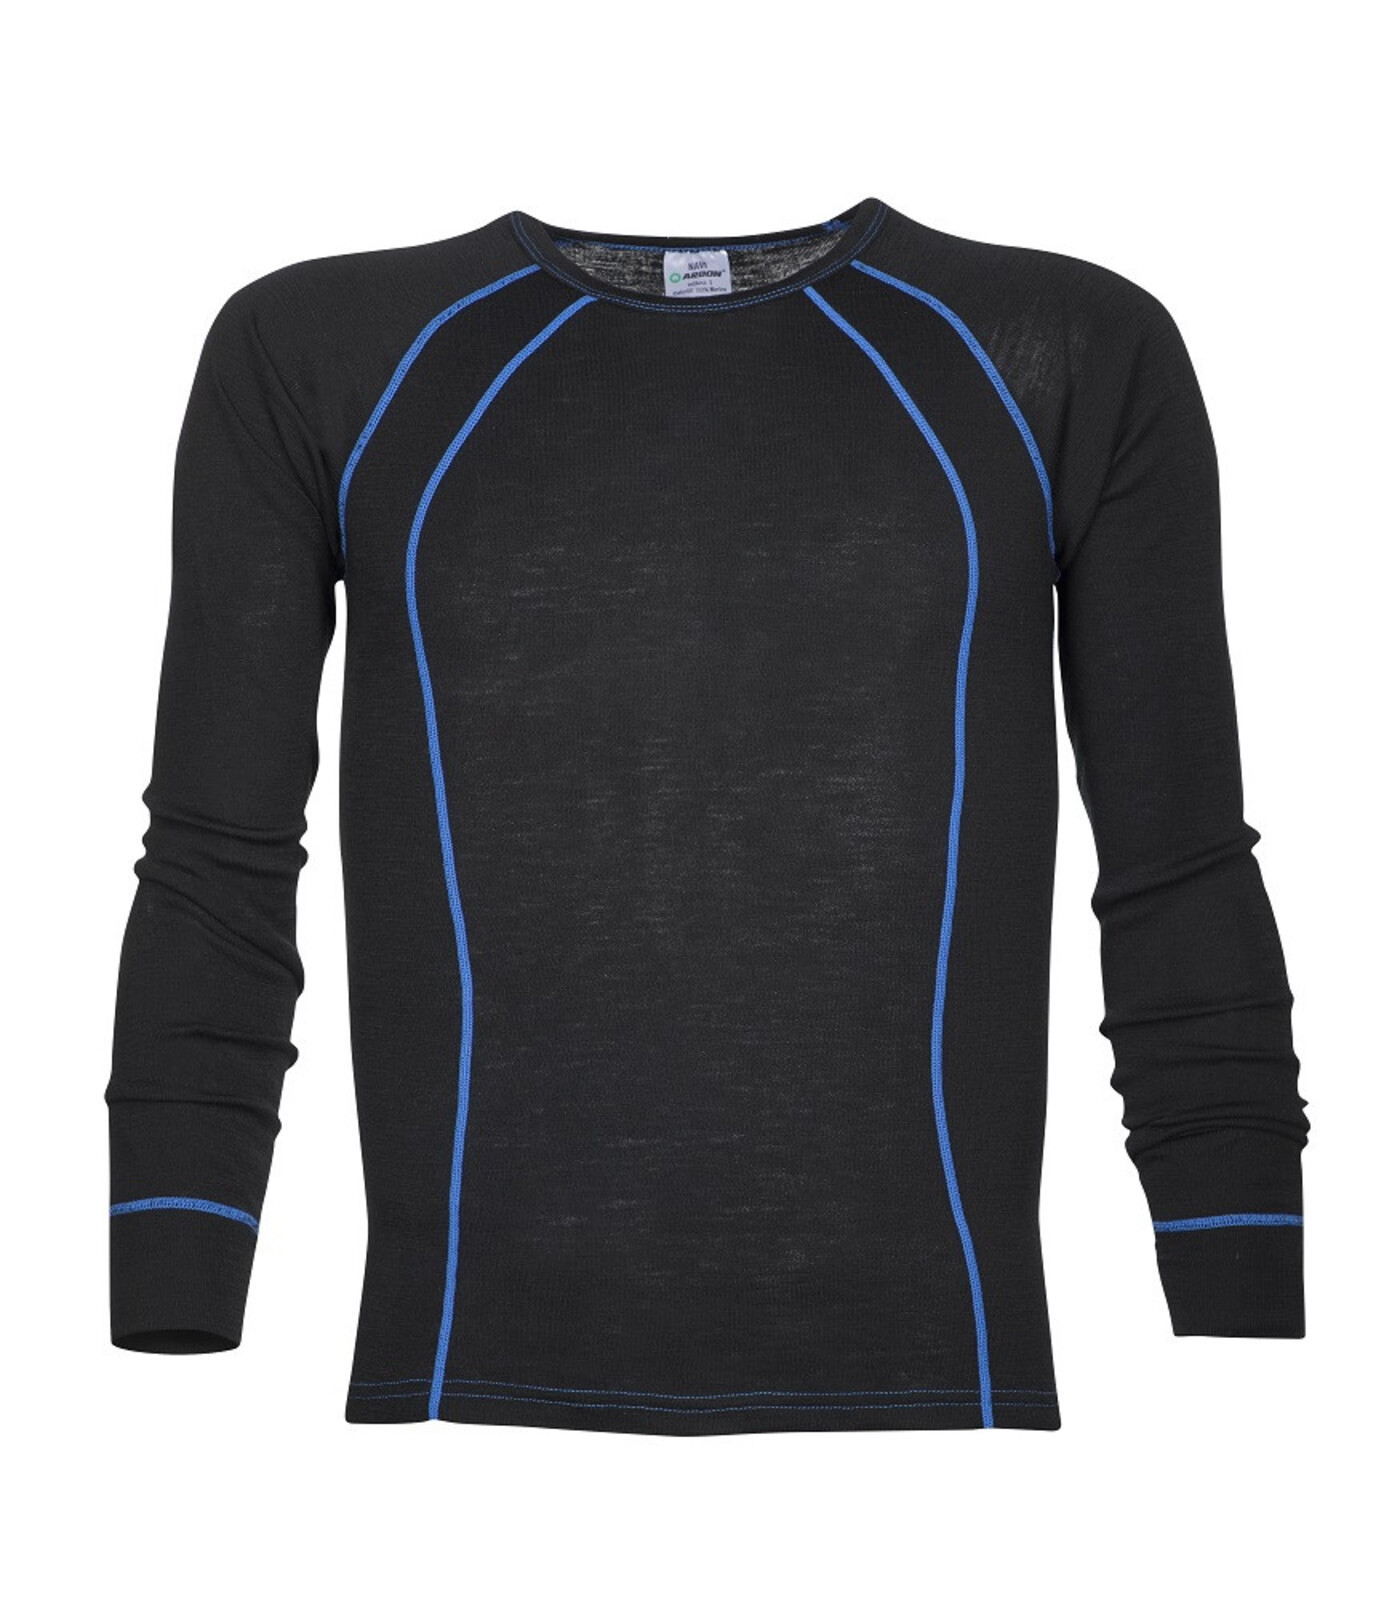 Pánske funkčné merino tričko s dlhým rukávom Ardon Navi - veľkosť: S, farba: čierna/modrá